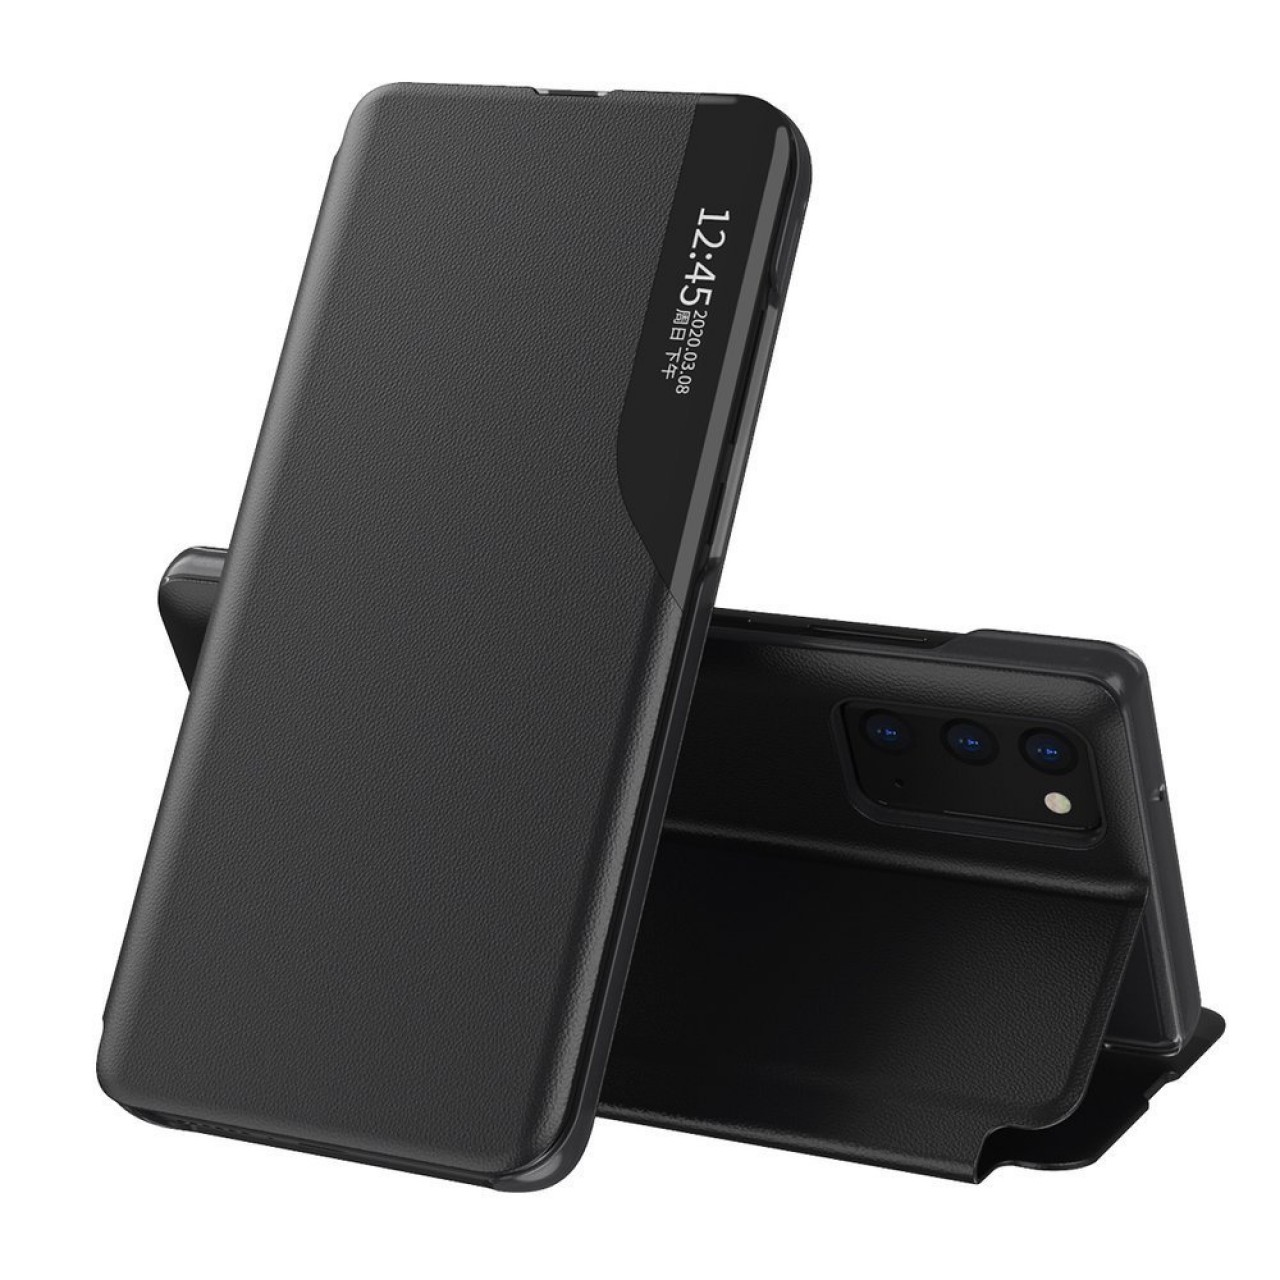 Θήκη Samsung Galaxy A12 Eco Leather View Case elegant bookcase type case with kickstand - 5939 - Μαύρο - ΟΕΜ